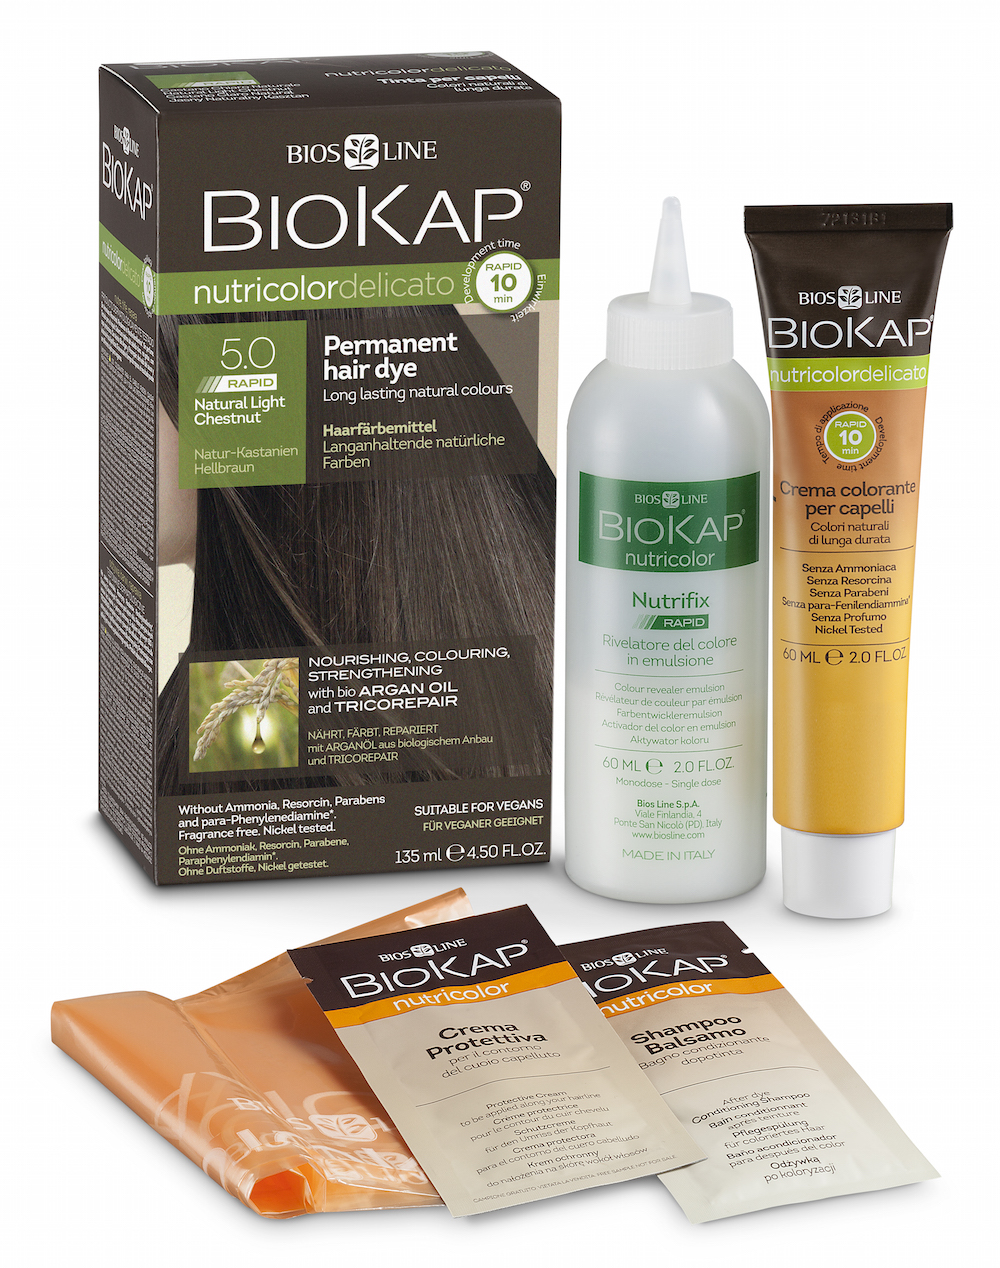 BioKap Nutricolor Delicato Rapid Hair Dye - Natural Light Chestnut 5.0